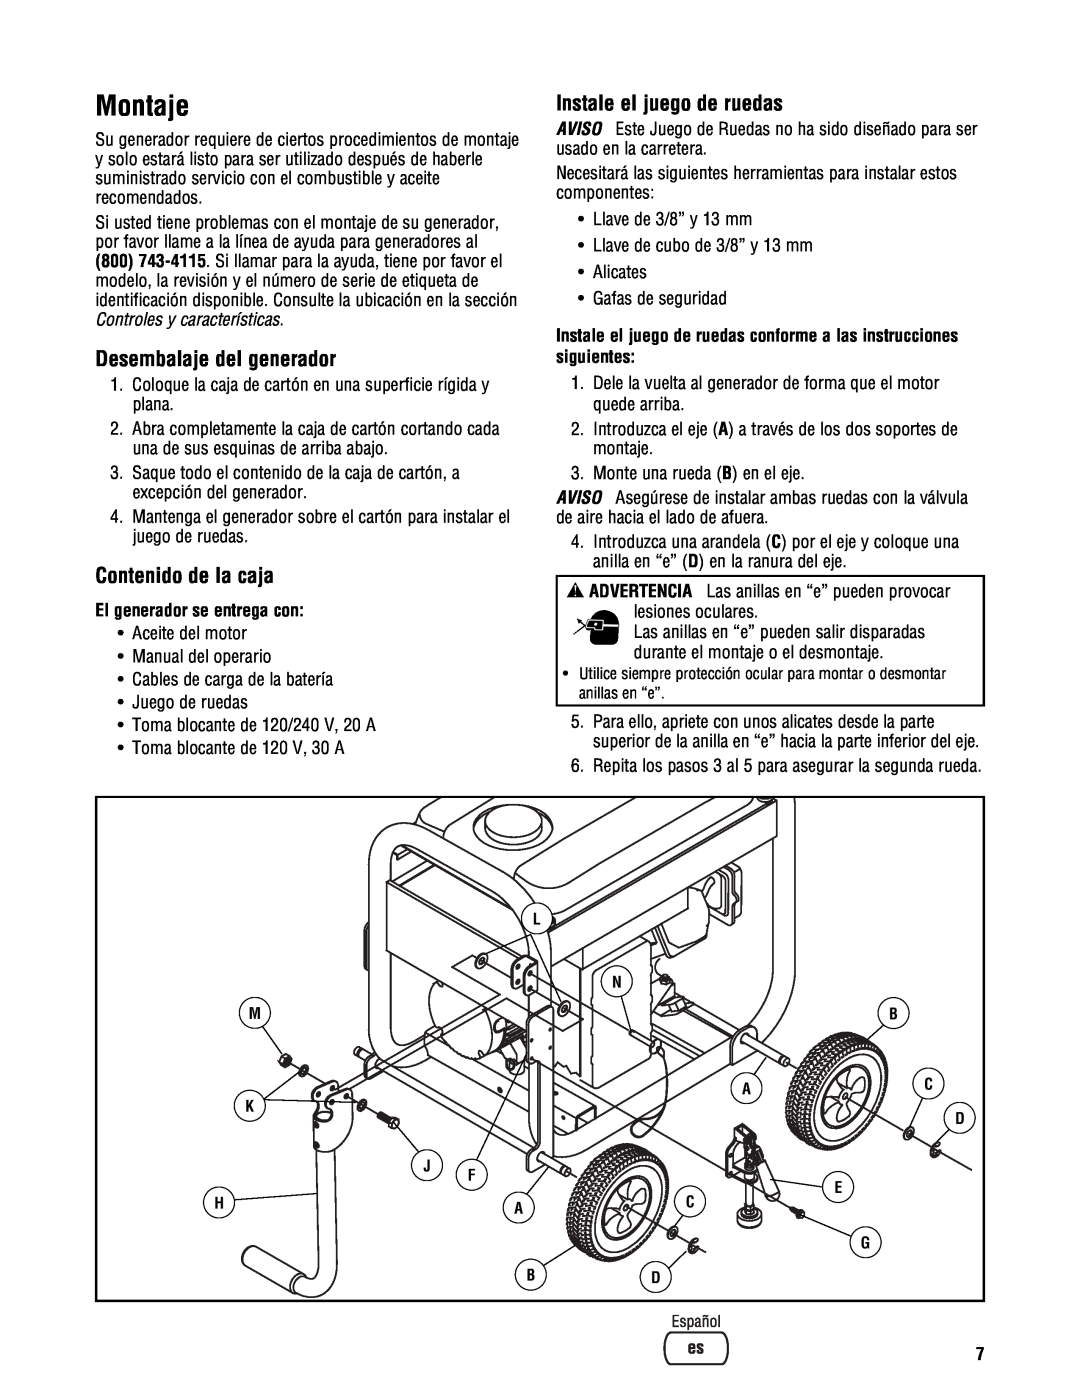 Briggs & Stratton PRO4000 manual Montaje, Desembalaje del generador, Contenido de la caja, Instale el juego de ruedas 